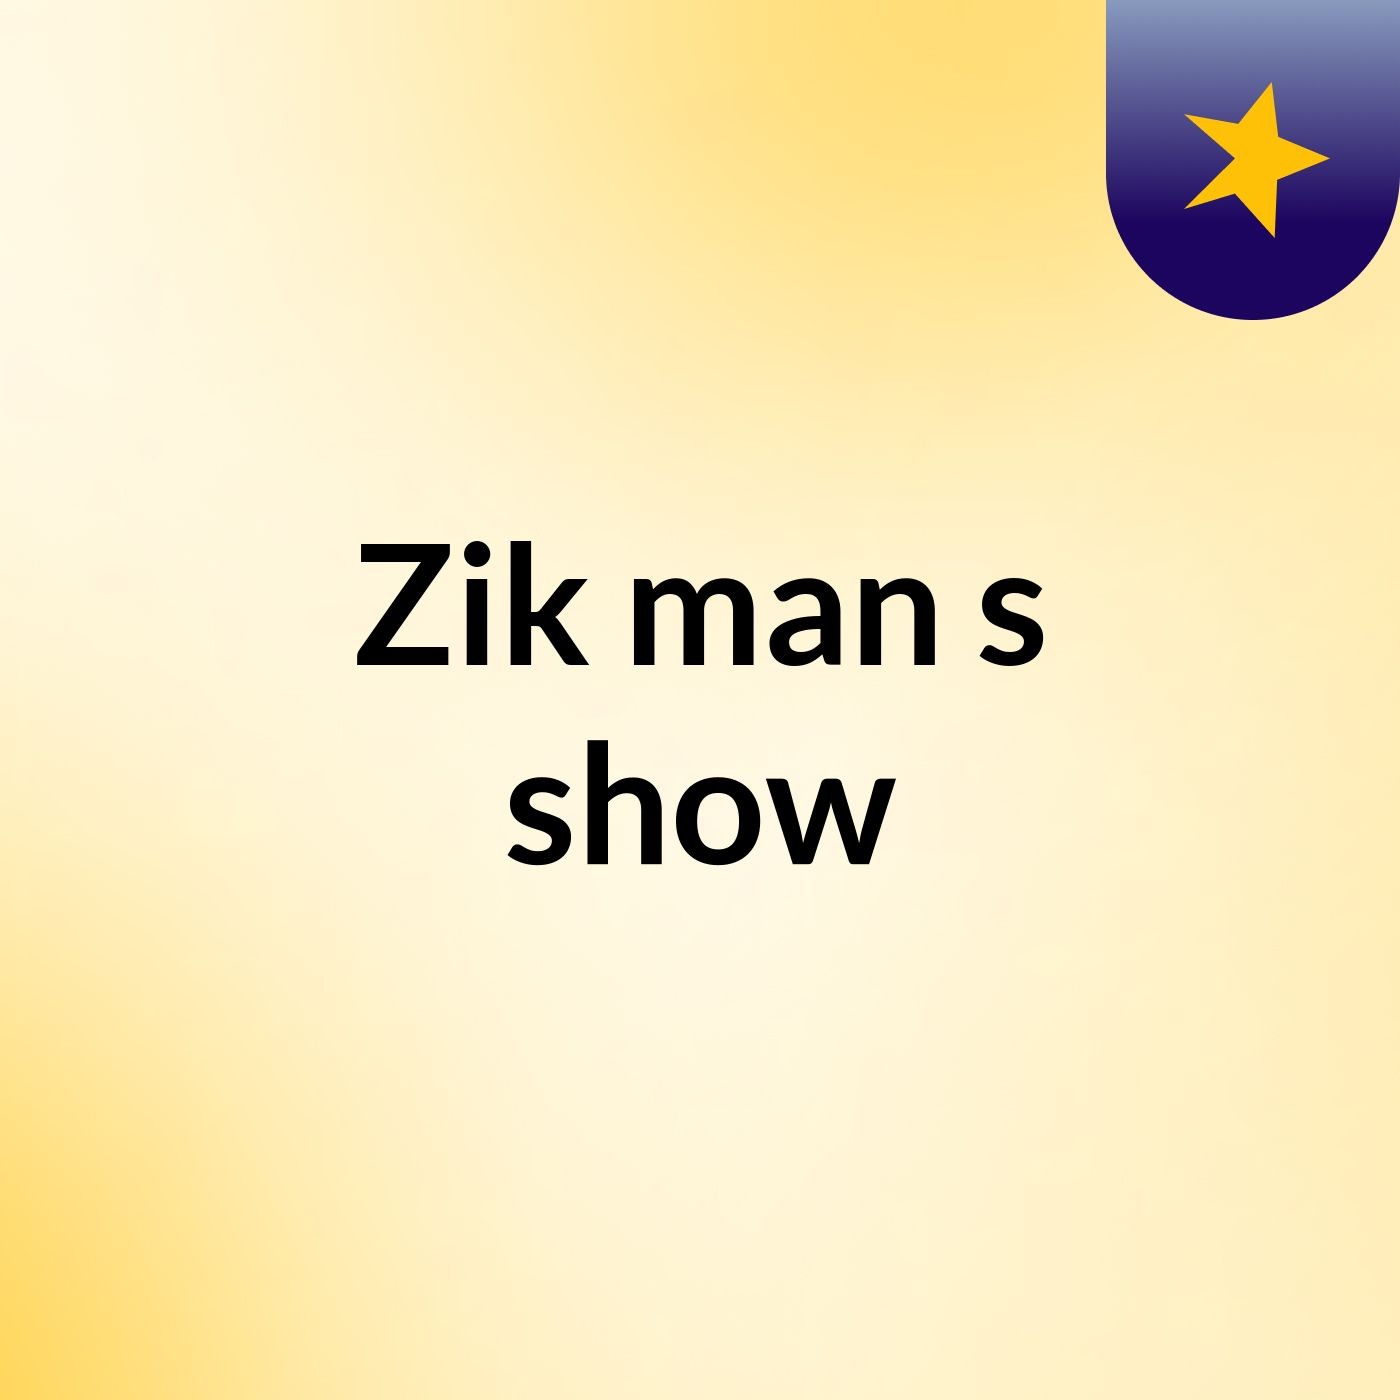 Zik man's show